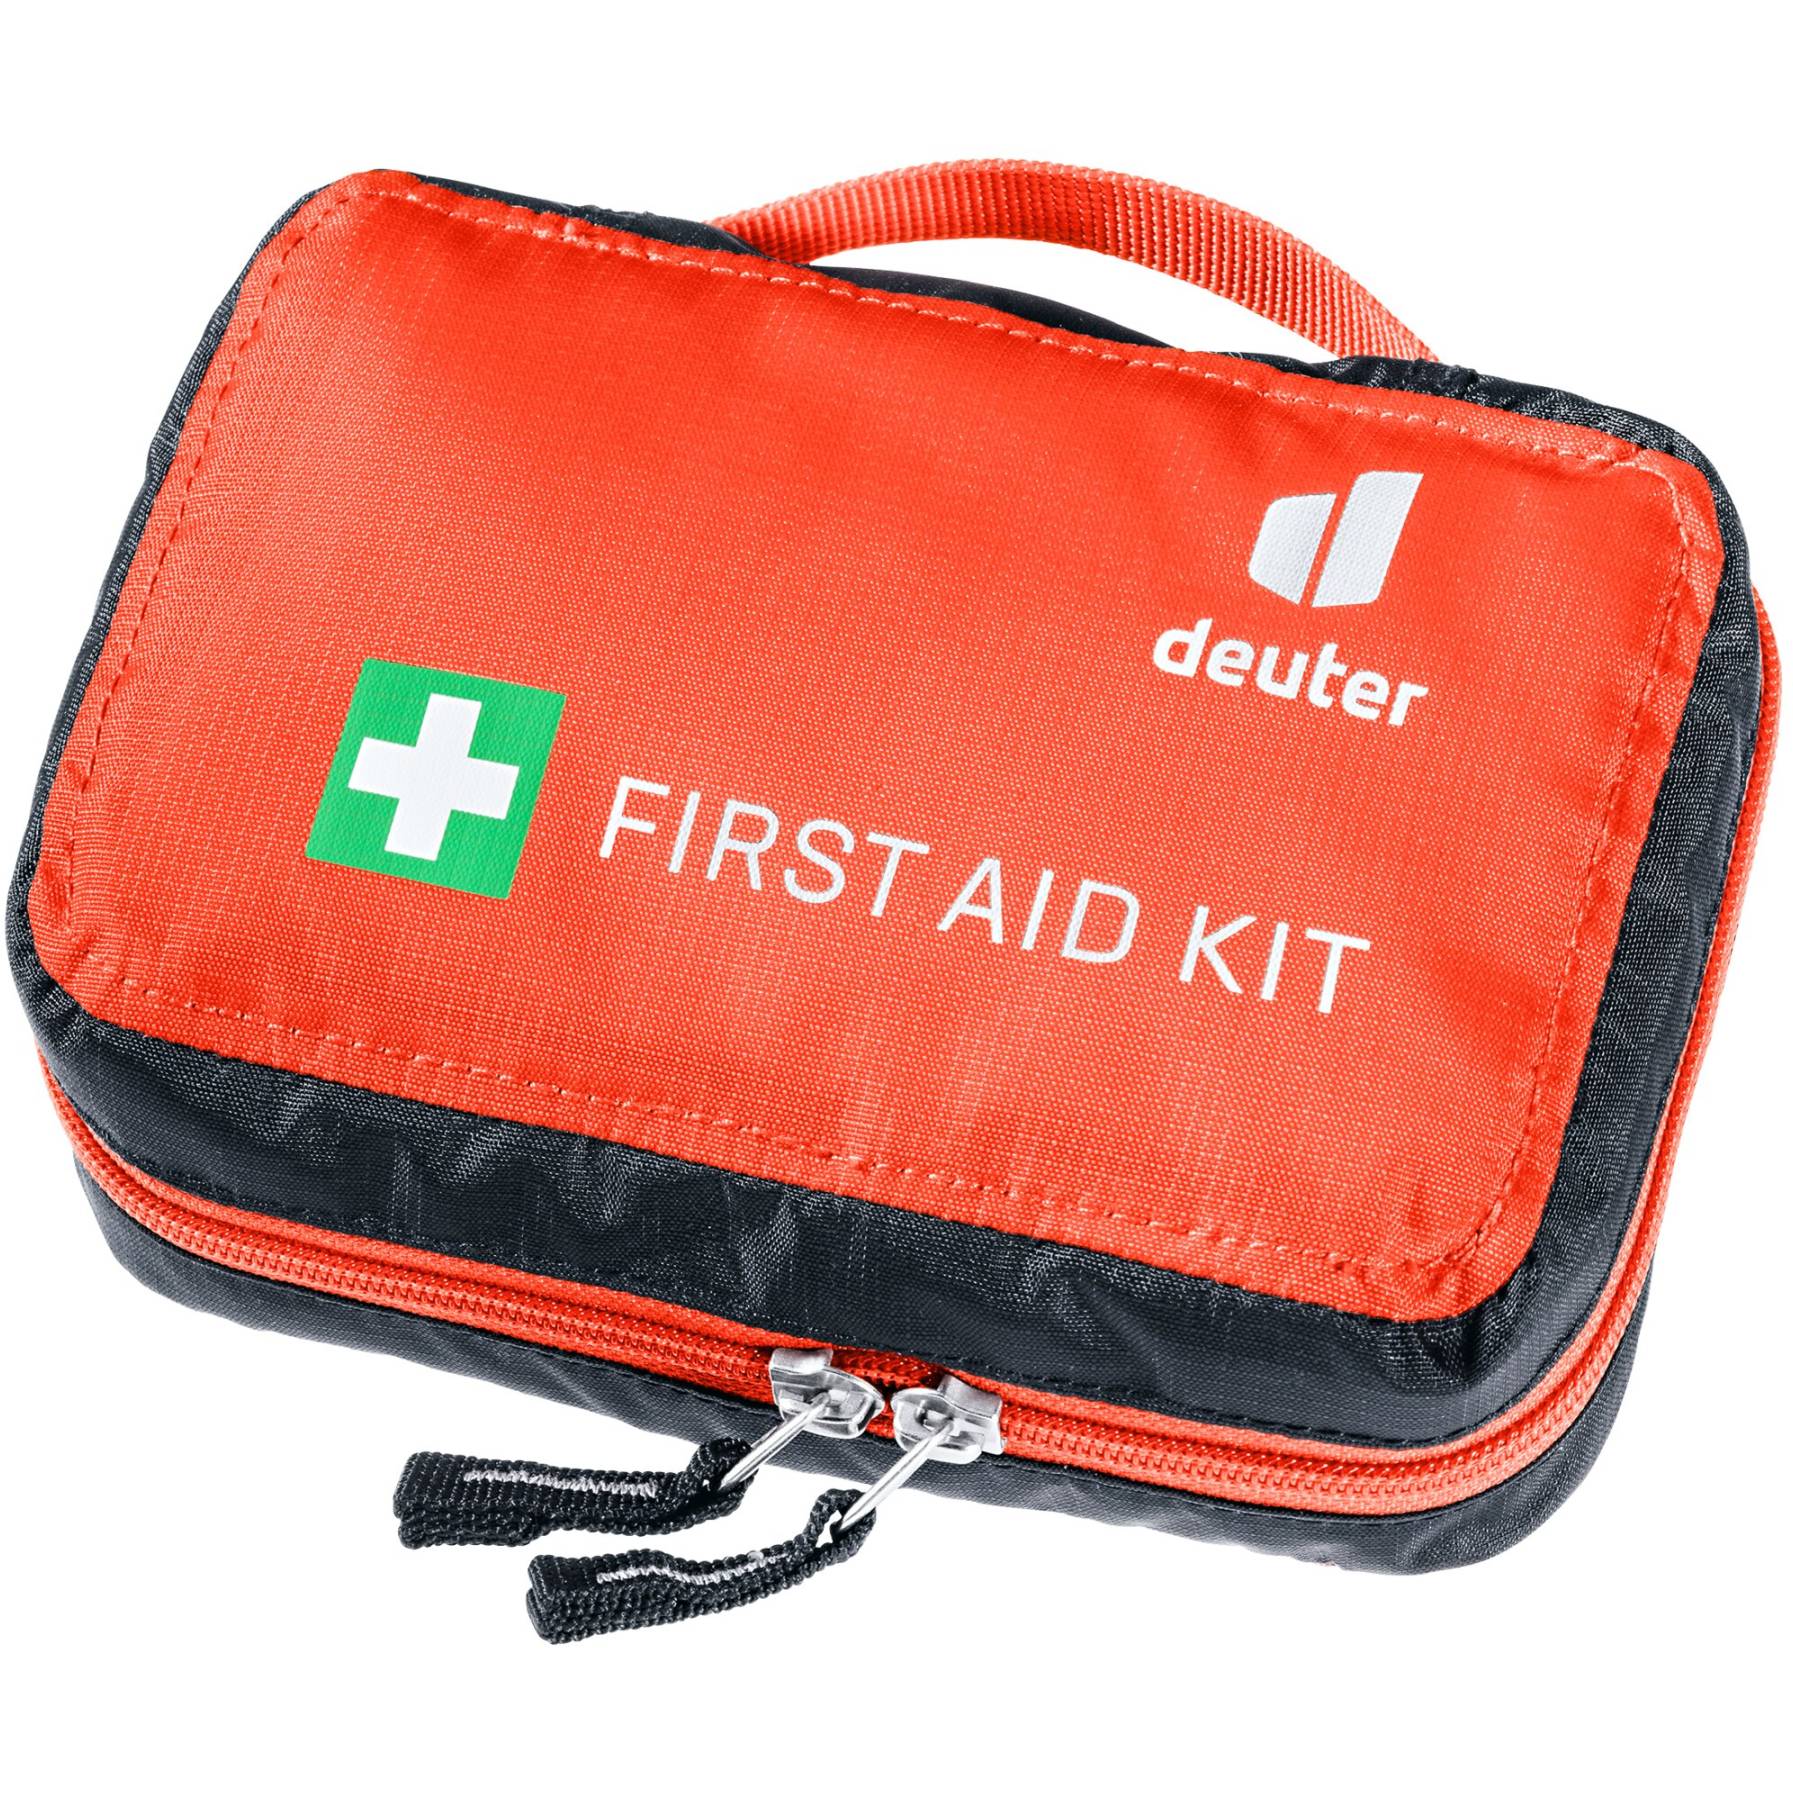 Immagine prodotto da Deuter First Aid Kit - Kit di Pronto Soccorso - materiale riciclato / papaya